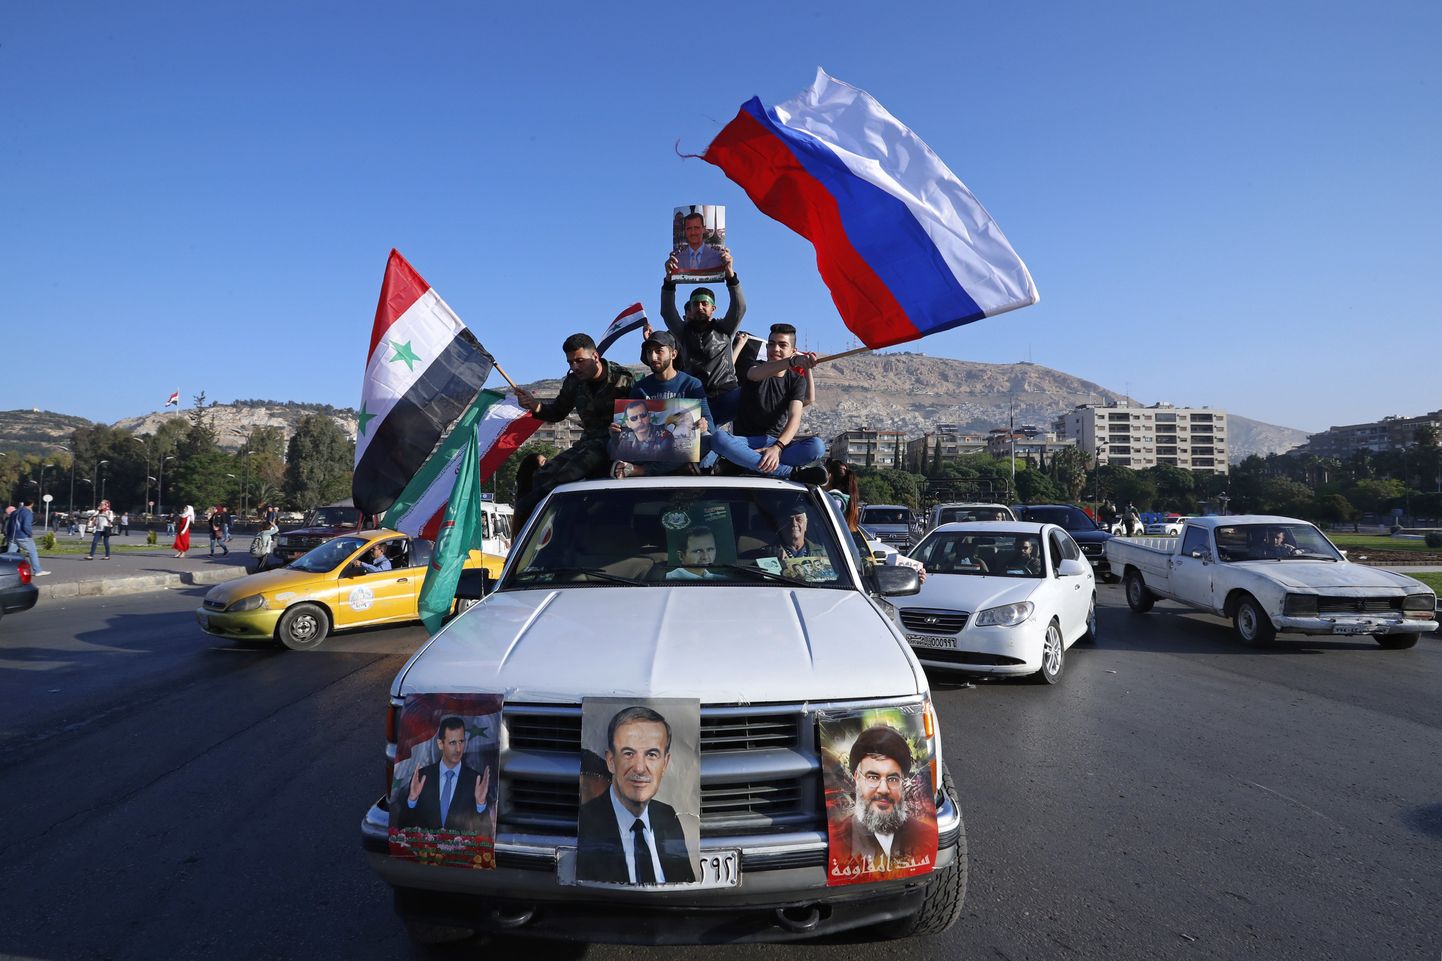 Valitsusmeelsed süürlased lehvitavad Süüria ja Vene lippe lääne õhurünnakute vastasel meeleavaldusel.